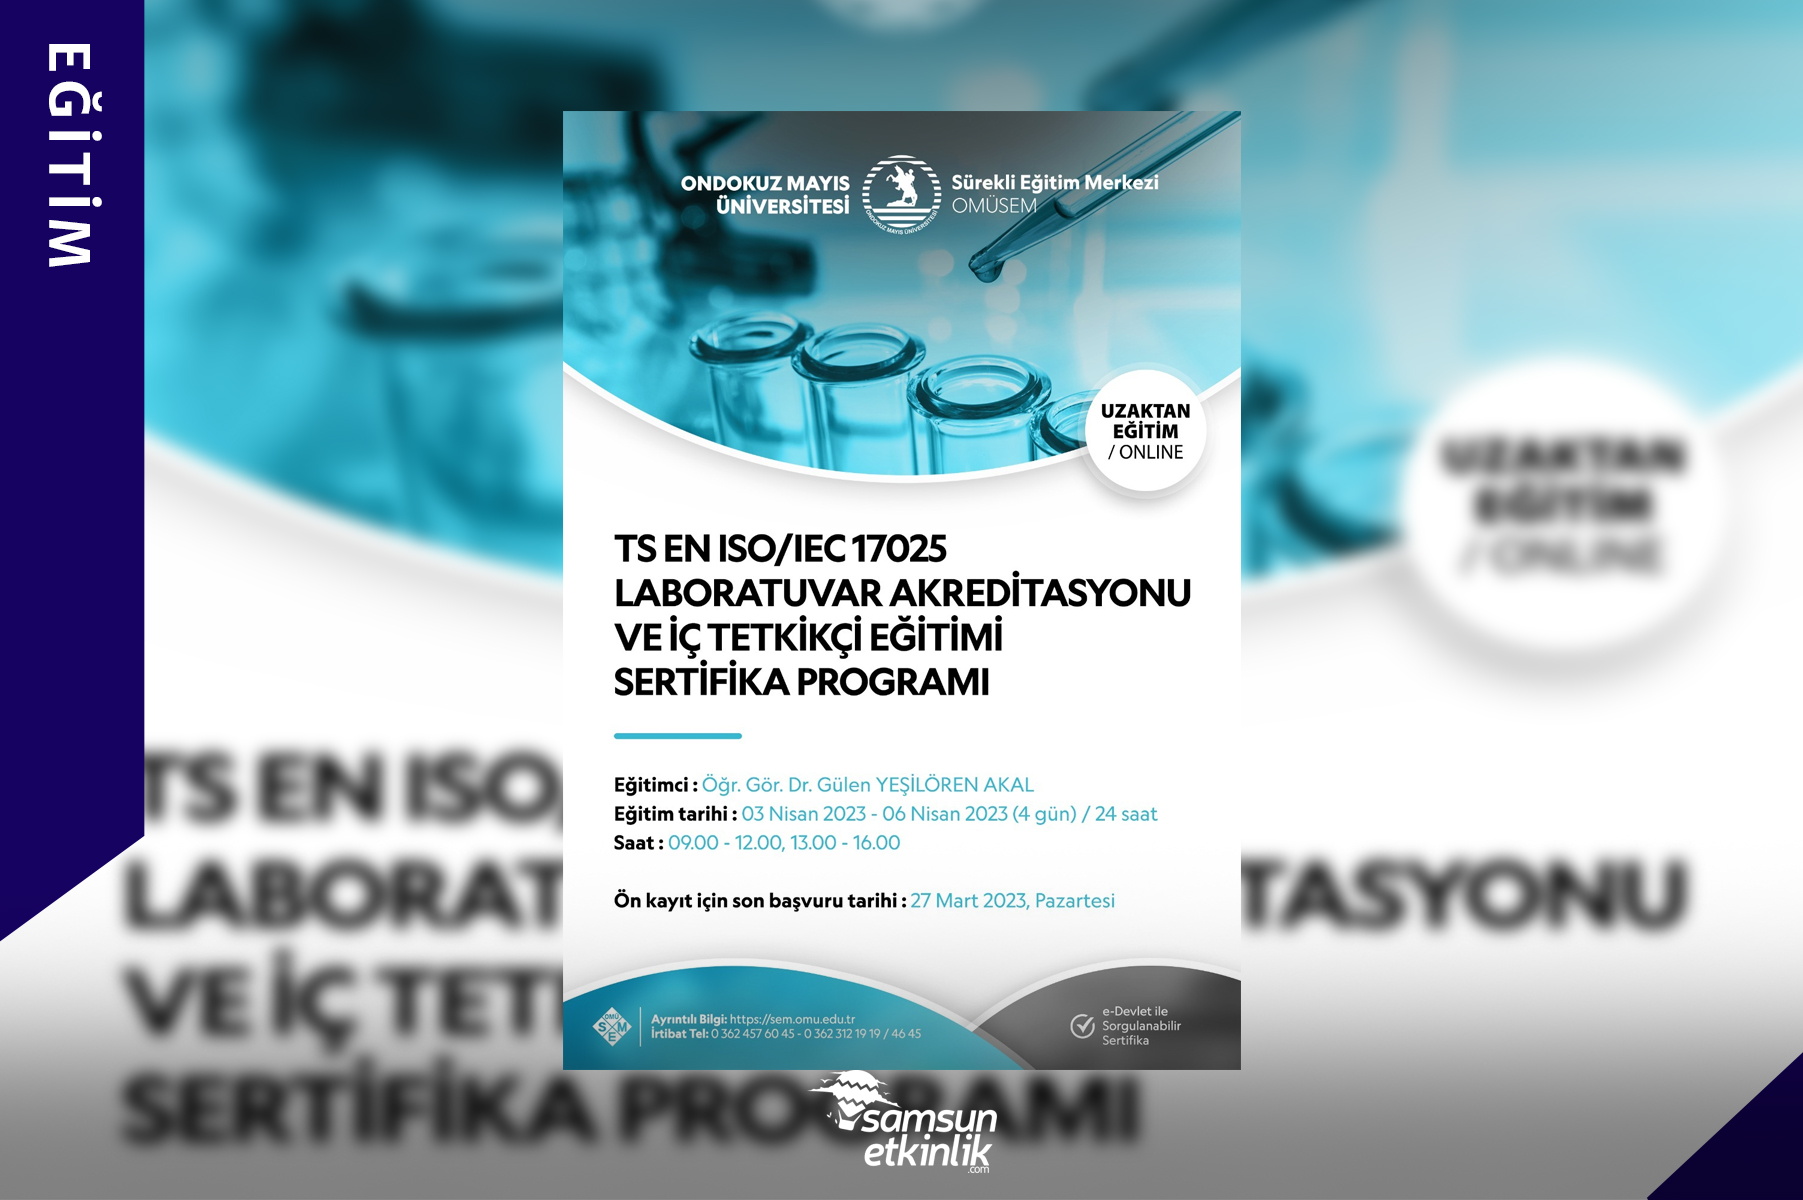 TS EN ISO/IEC 17025 Laboratuvar Akreditasyonu ve İç Tetkikçi Eğitimi Sertifika Programı